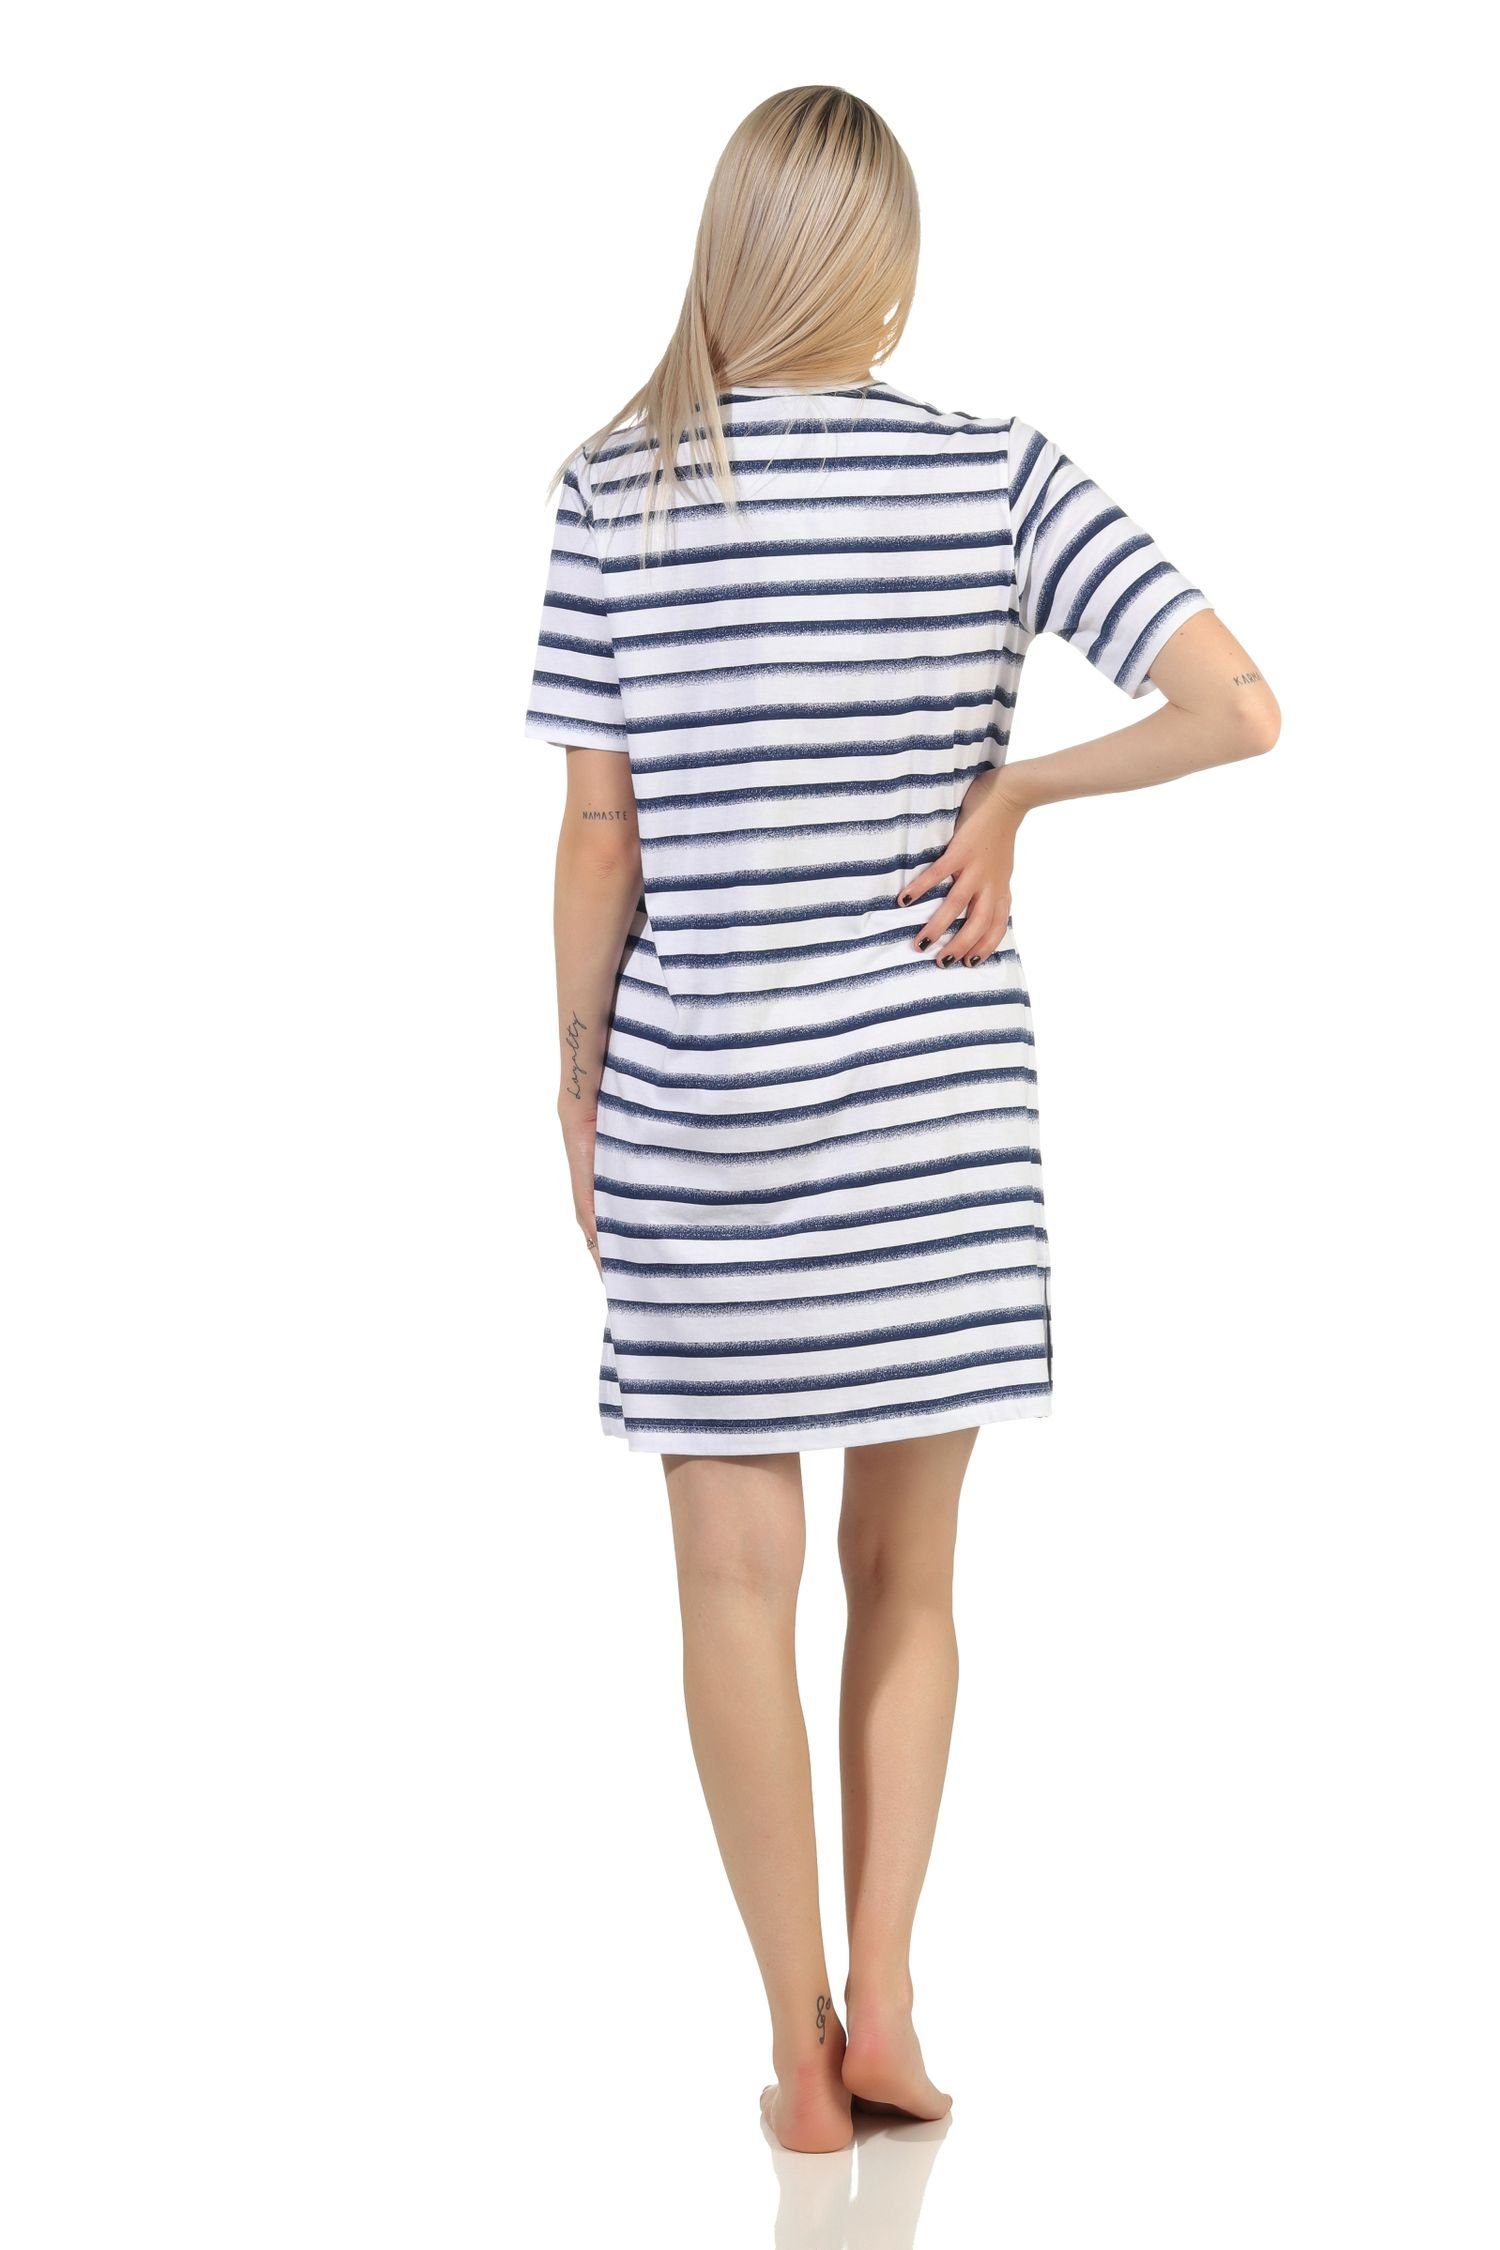 Normann Nachthemd Anker Damen Maritimes - Übergröße Motiv kurzarm Nachthemd mit marine in auch